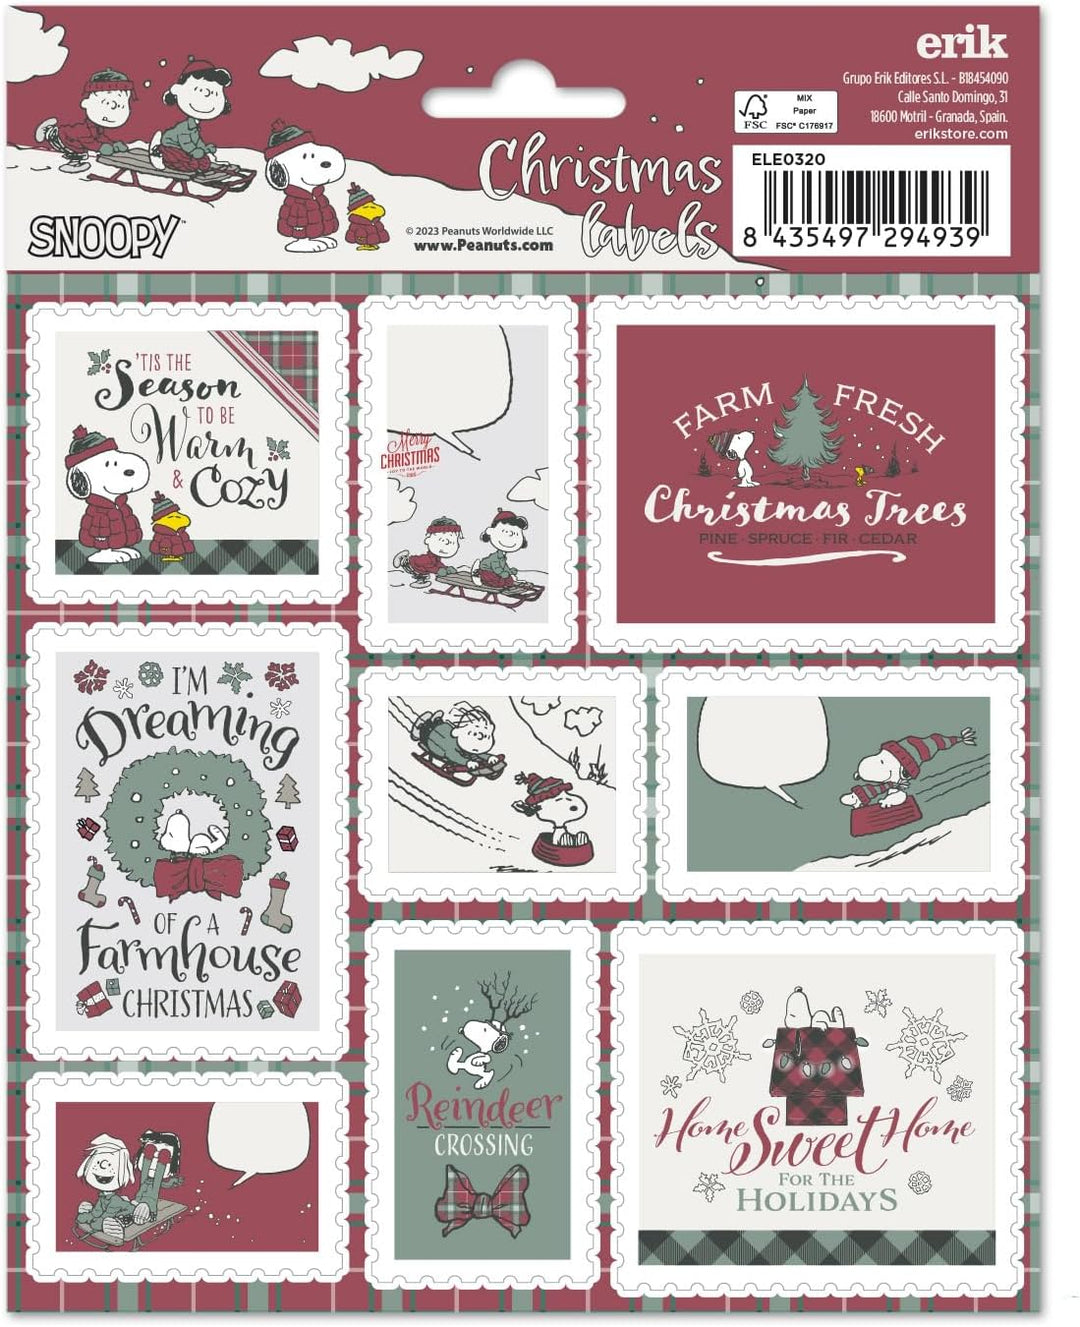 Grupo Erik Snoopy Christmas Labels | Sticky Labels | Food Labels Stickers | Labels Stickers